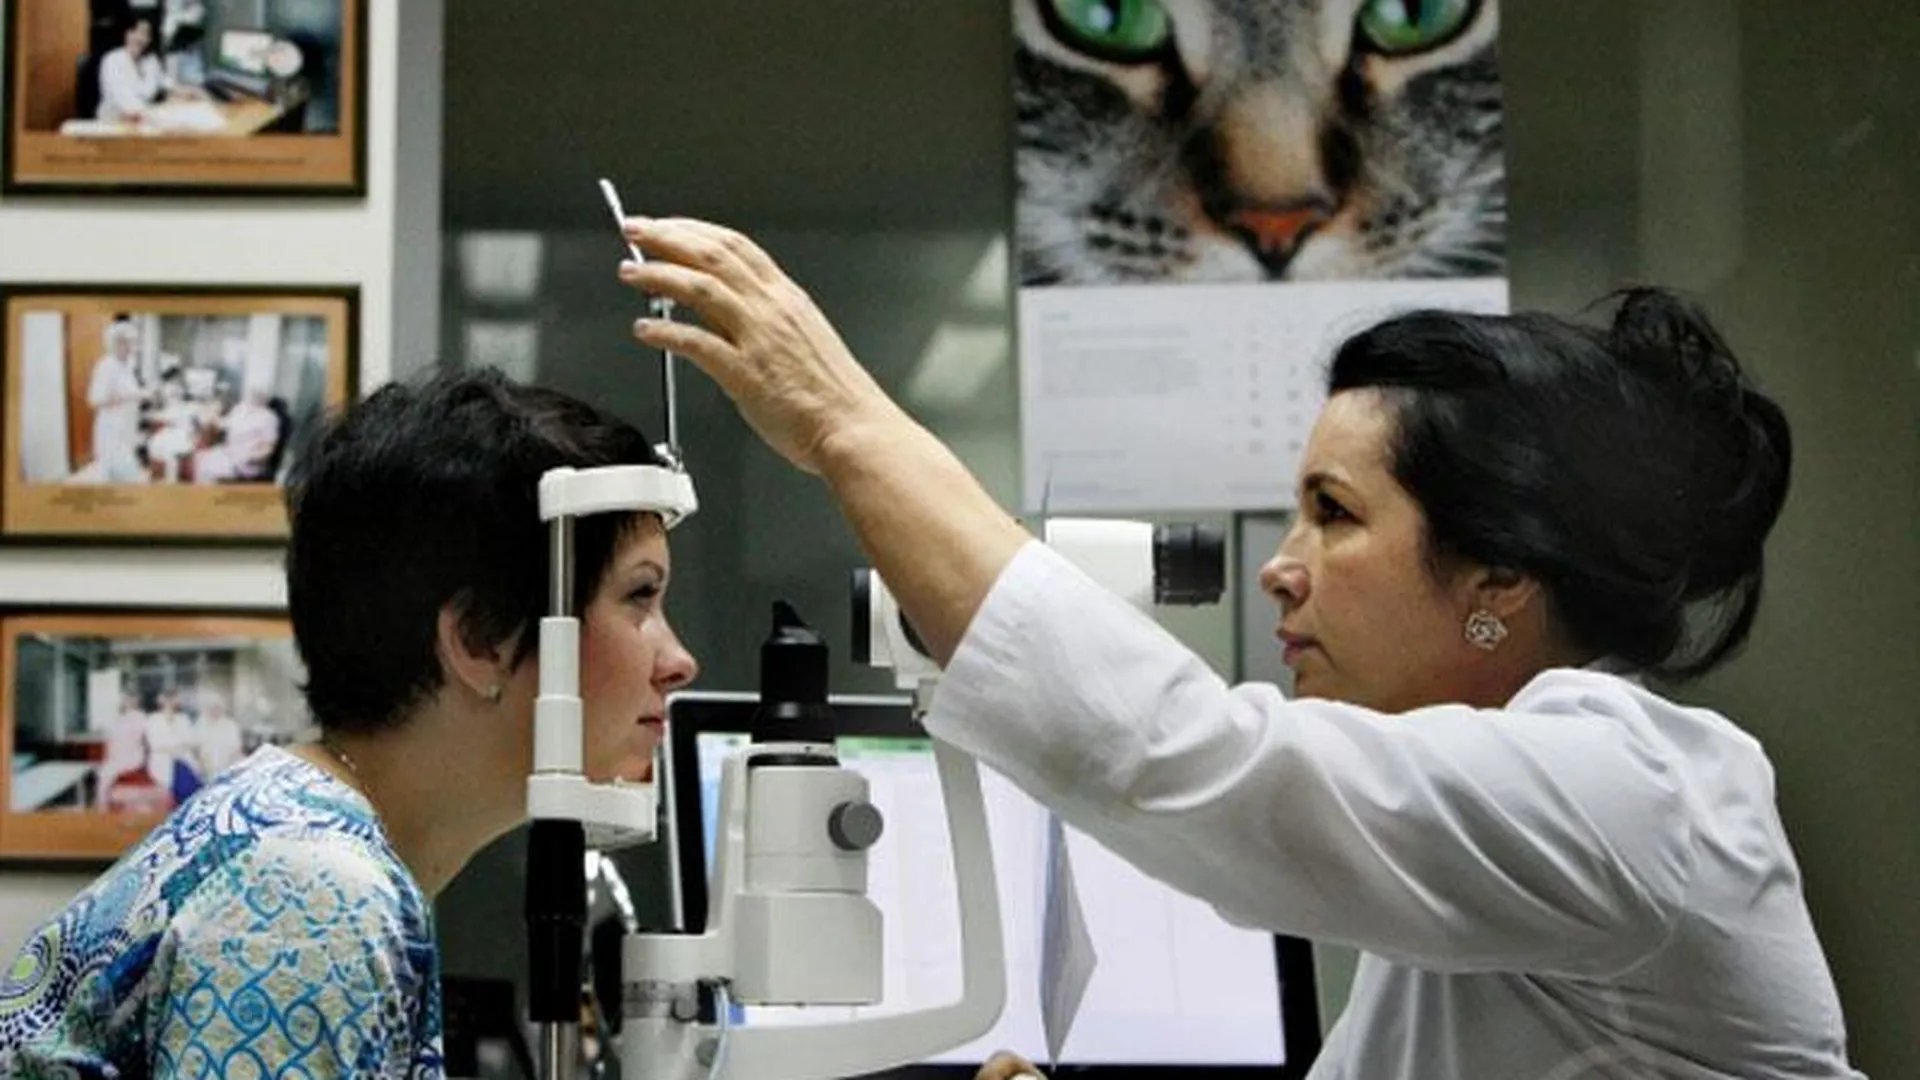 Ученые намерены пересадить сетчатку глаза из стволовых клеток слепому человеку